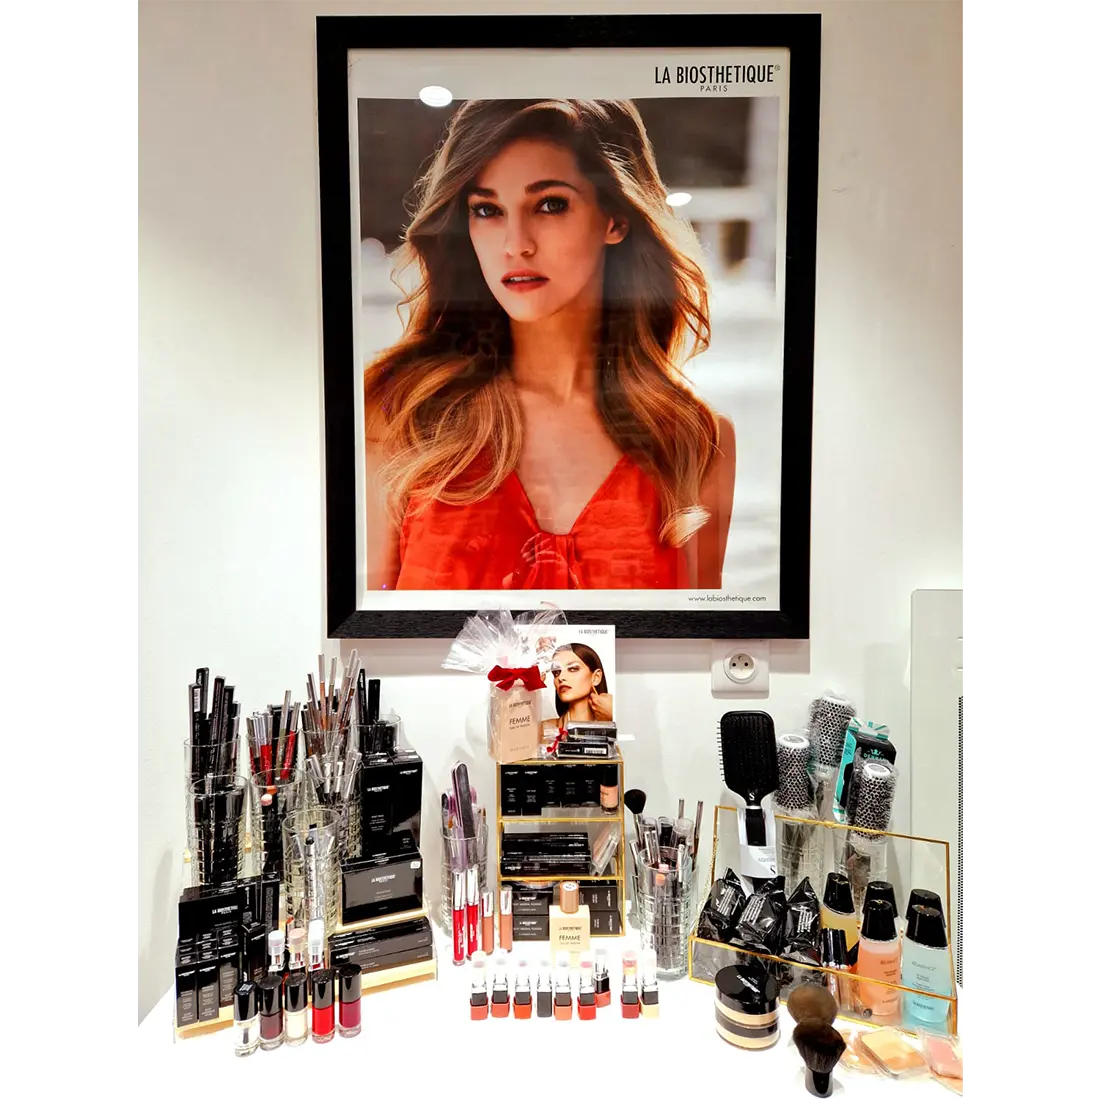 La gamme de produits de maquillage, make-up La Biosthetique est disponible au salon de coiffure Marlène Nuance dans le centre ville de Quimper